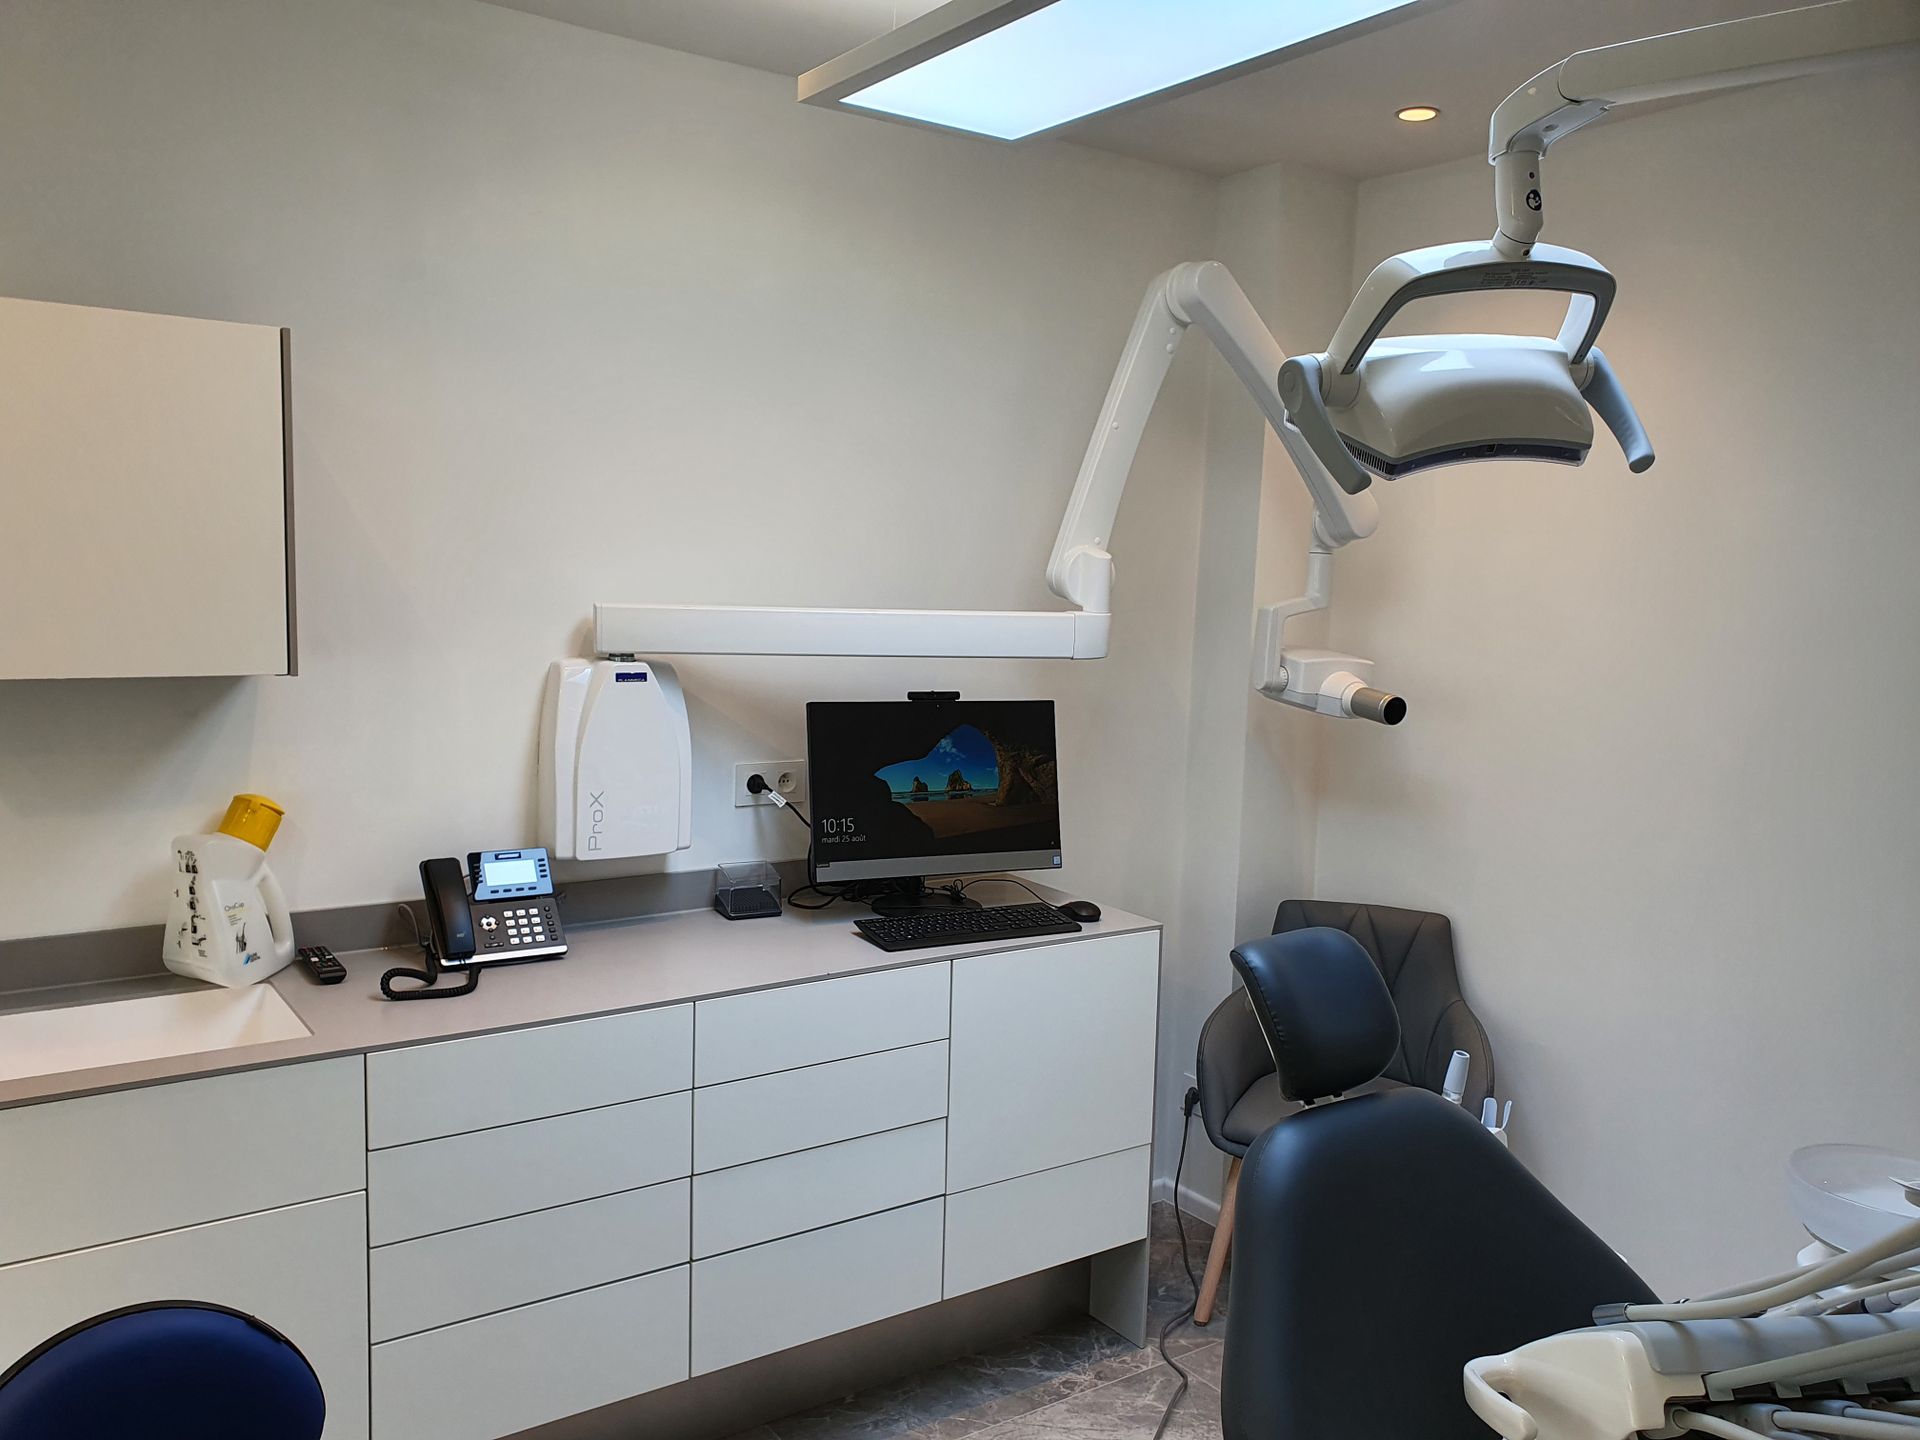 HelpIT-service-informatique-Braine-l-alleud-brabant-wallon-specialiste-cabinet-dentaire-installation-PME-centres-de-soins-dentistes